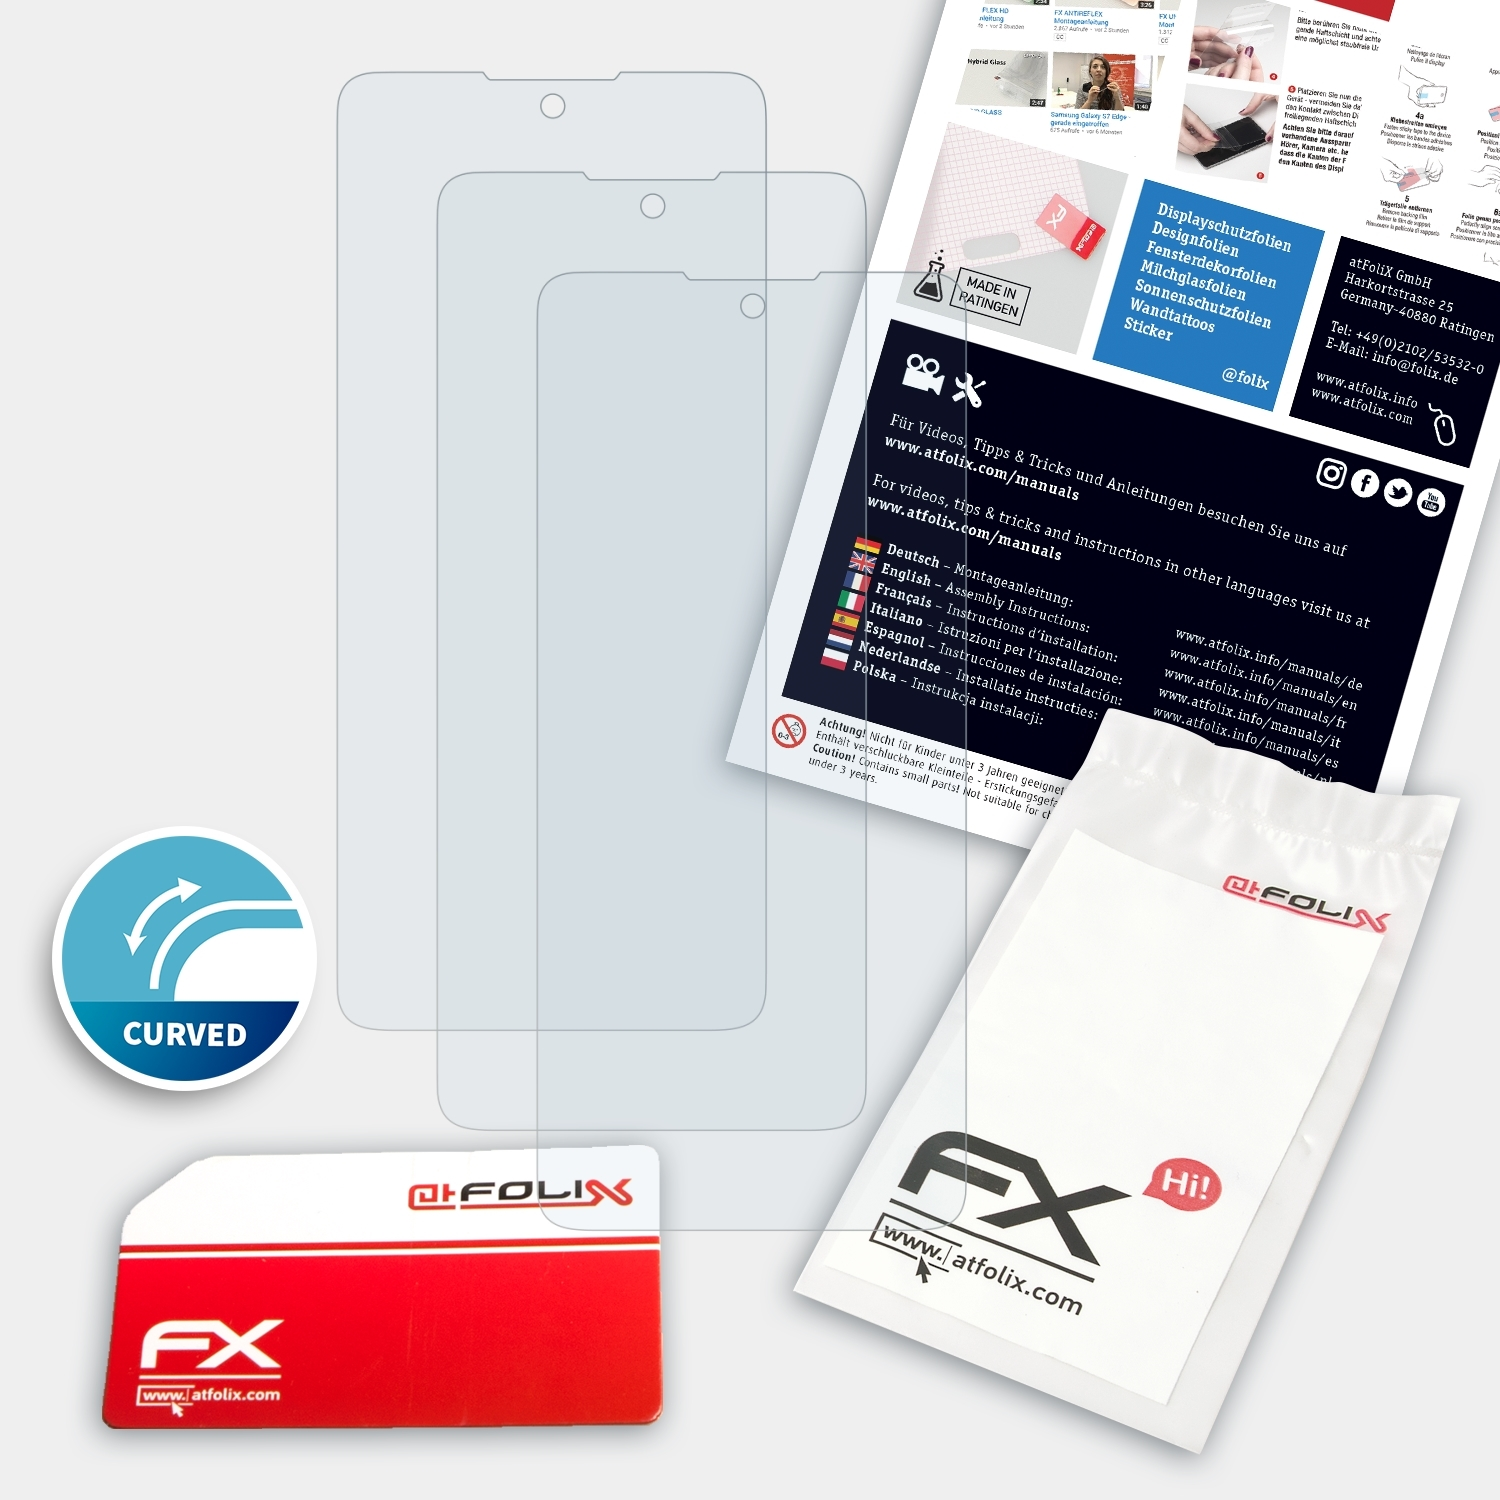 ATFOLIX 3x FX-ActiFleX Pro) 20 Displayschutz(für TCL